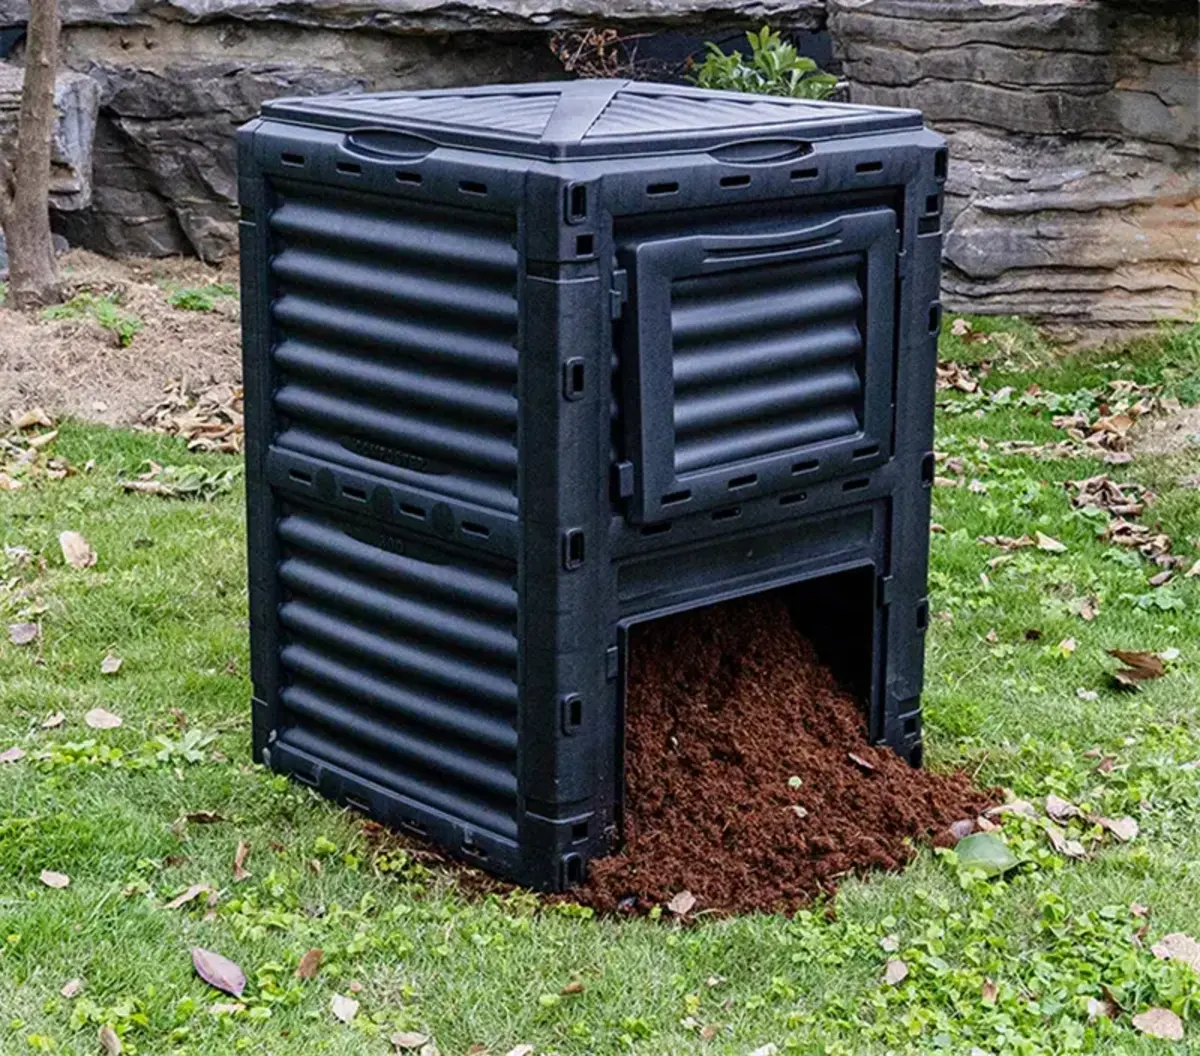 bac a compost en plastique noir dans un jardin faire compost sans bac